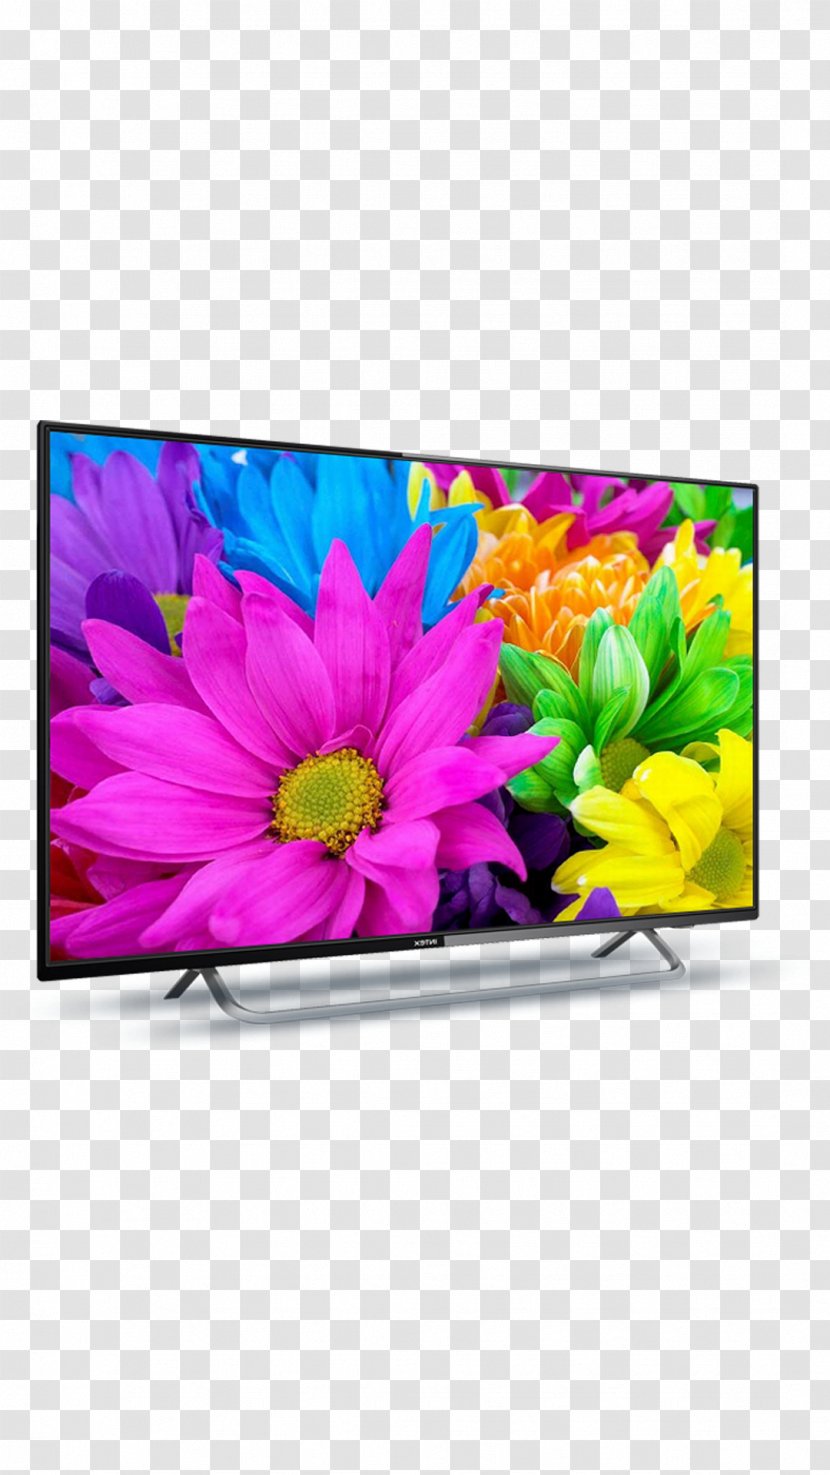 LED-backlit LCD High-definition Television 1080p Smart TV - 4k Resolution - Led Tv Transparent PNG